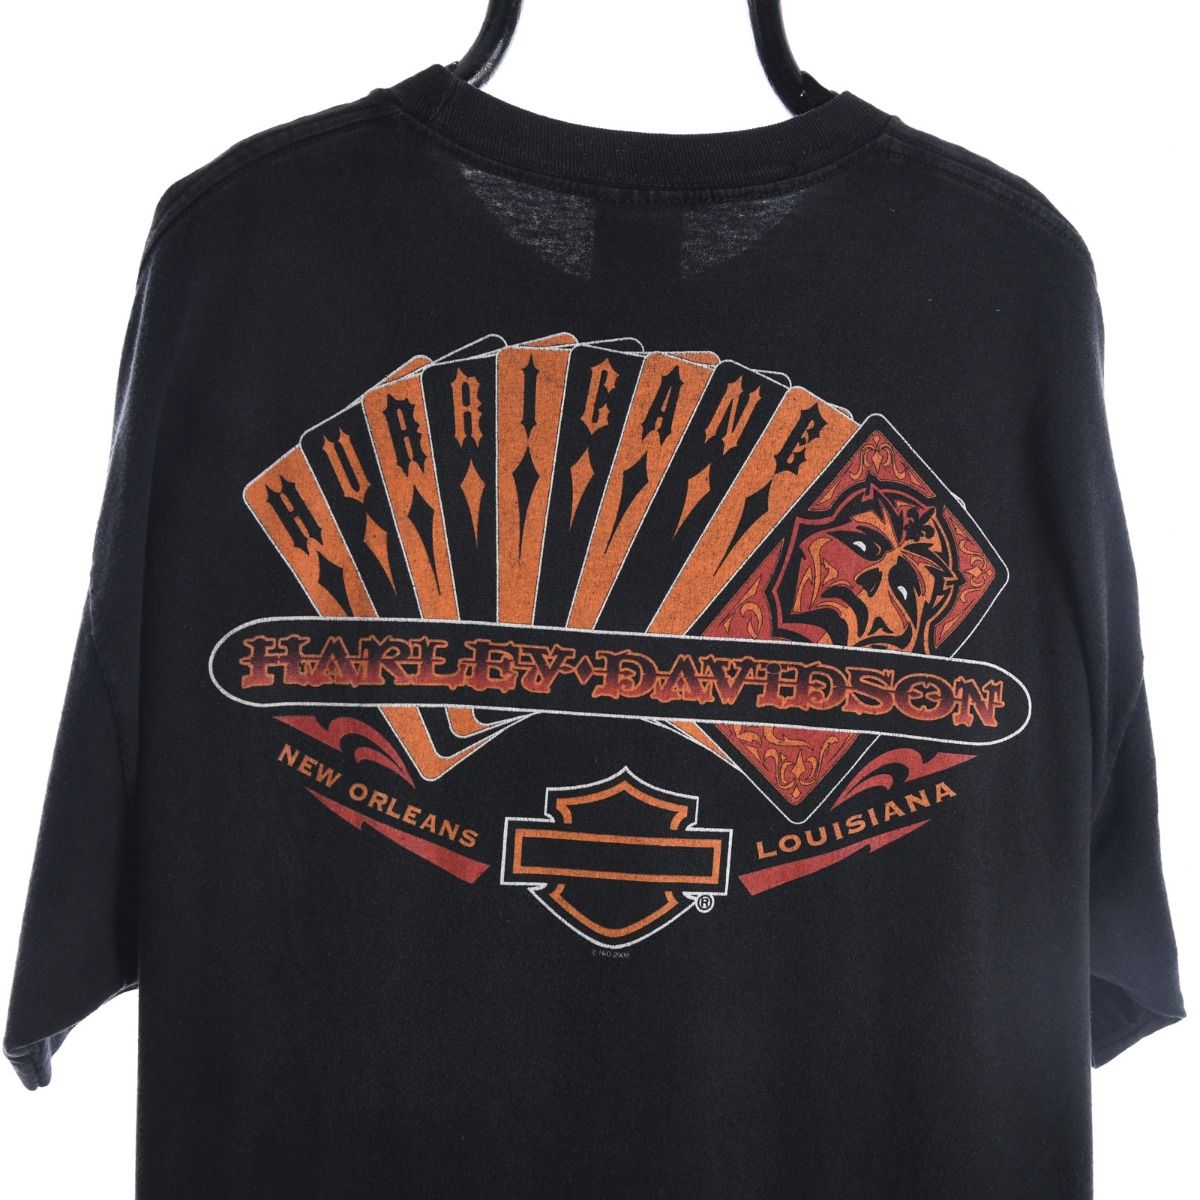 Harley Davidson Hurricane T-Shirt